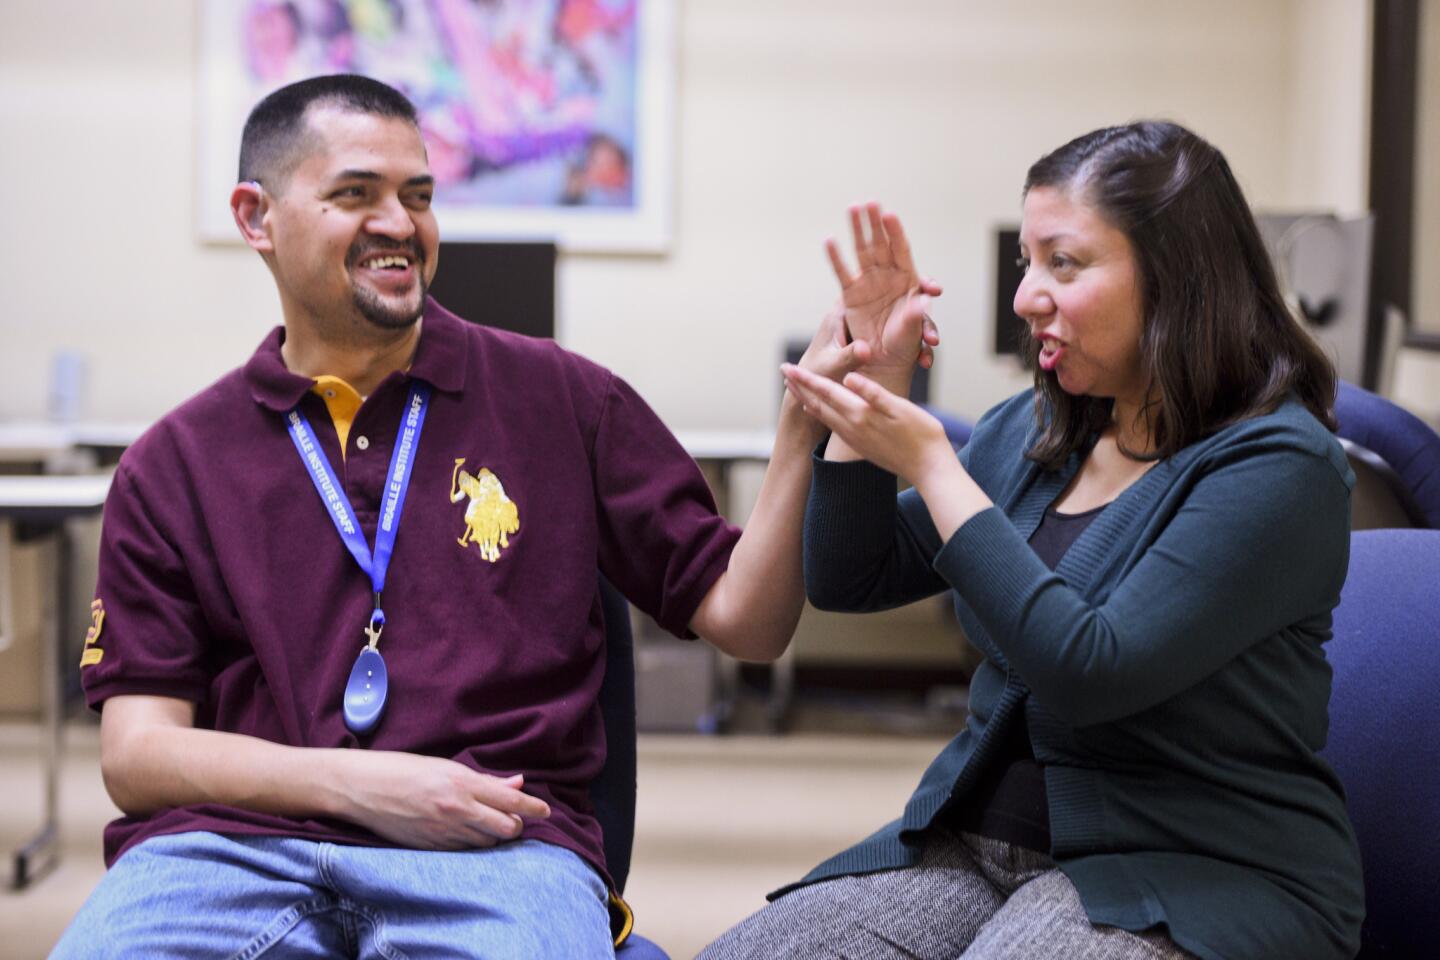 Tania Amaya uses sign language to speak to her husband, Jose.